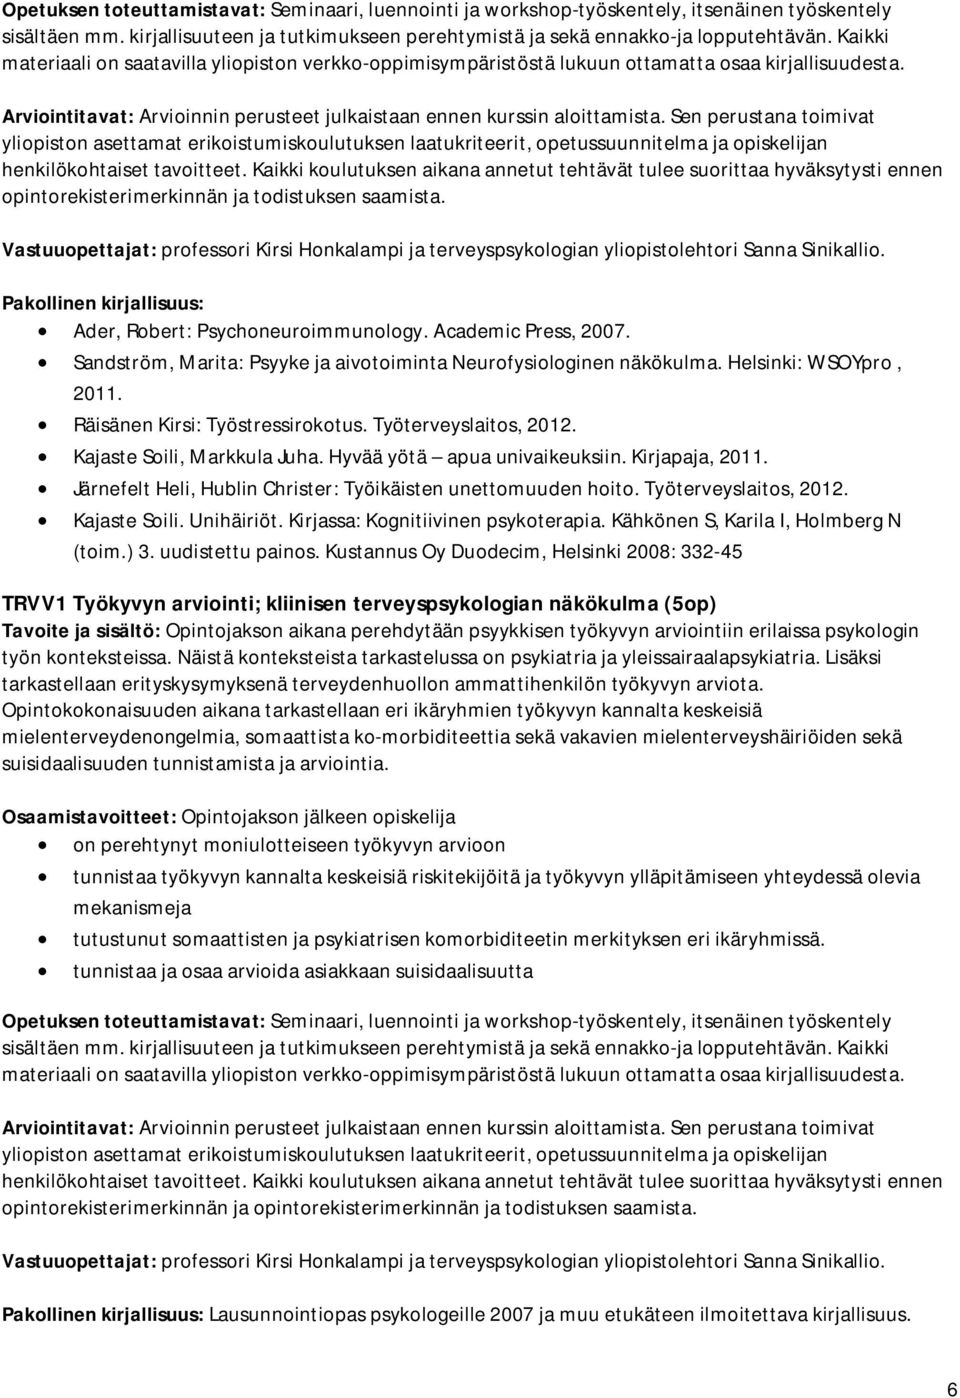 Järnefelt Heli, Hublin Christer: Työikäisten unettomuuden hoito. Työterveyslaitos, 2012. Kajaste Soili. Unihäiriöt. Kirjassa: Kognitiivinen psykoterapia. Kähkönen S, Karila I, Holmberg N (toim.) 3.